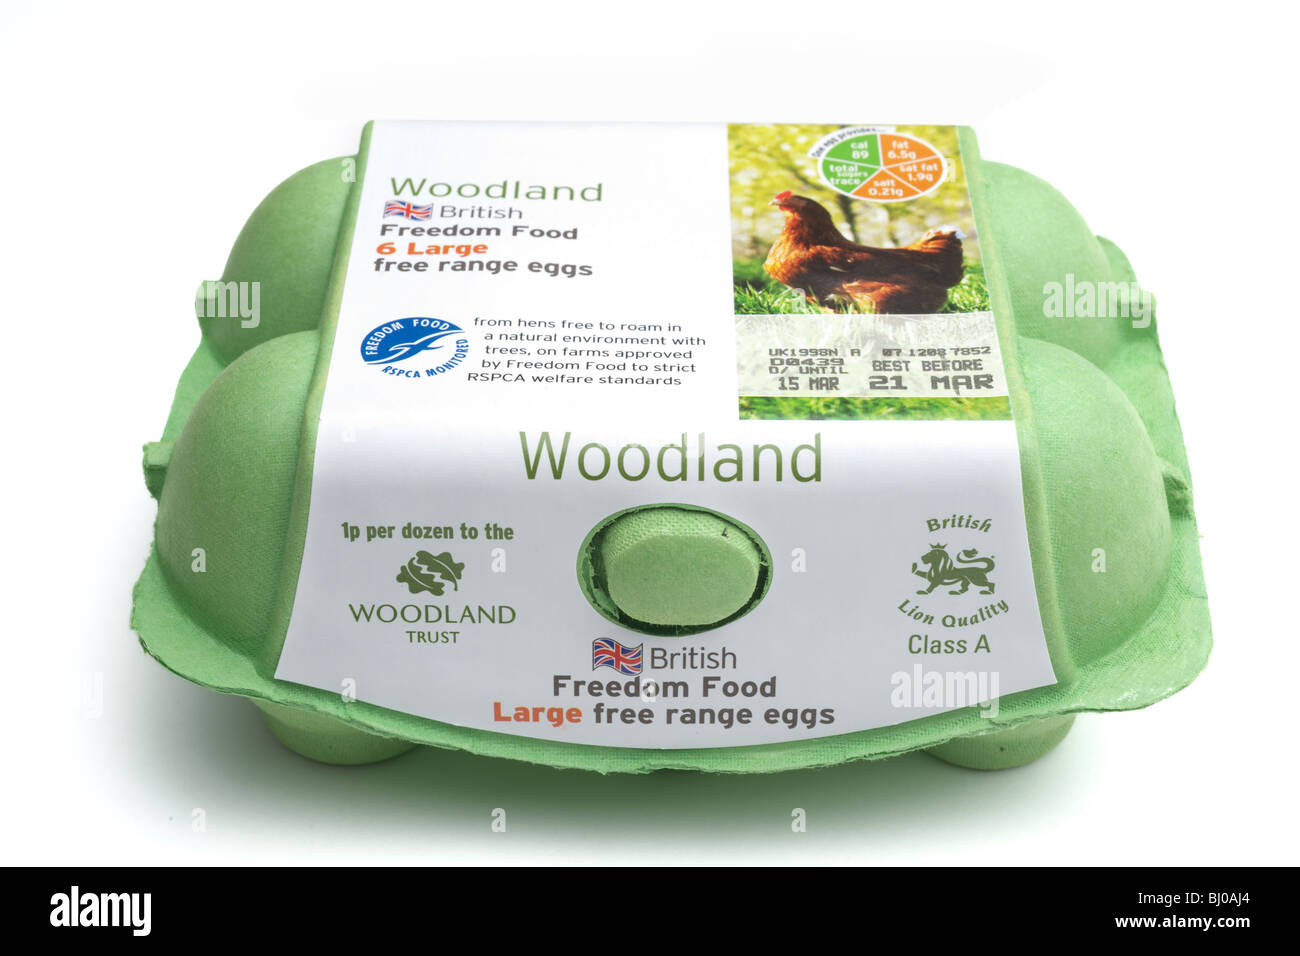 Ei-Box mit sechs Klasse A Woodland britische Freilandeier in einem grünen Polystyrol-Behälter Stockfoto